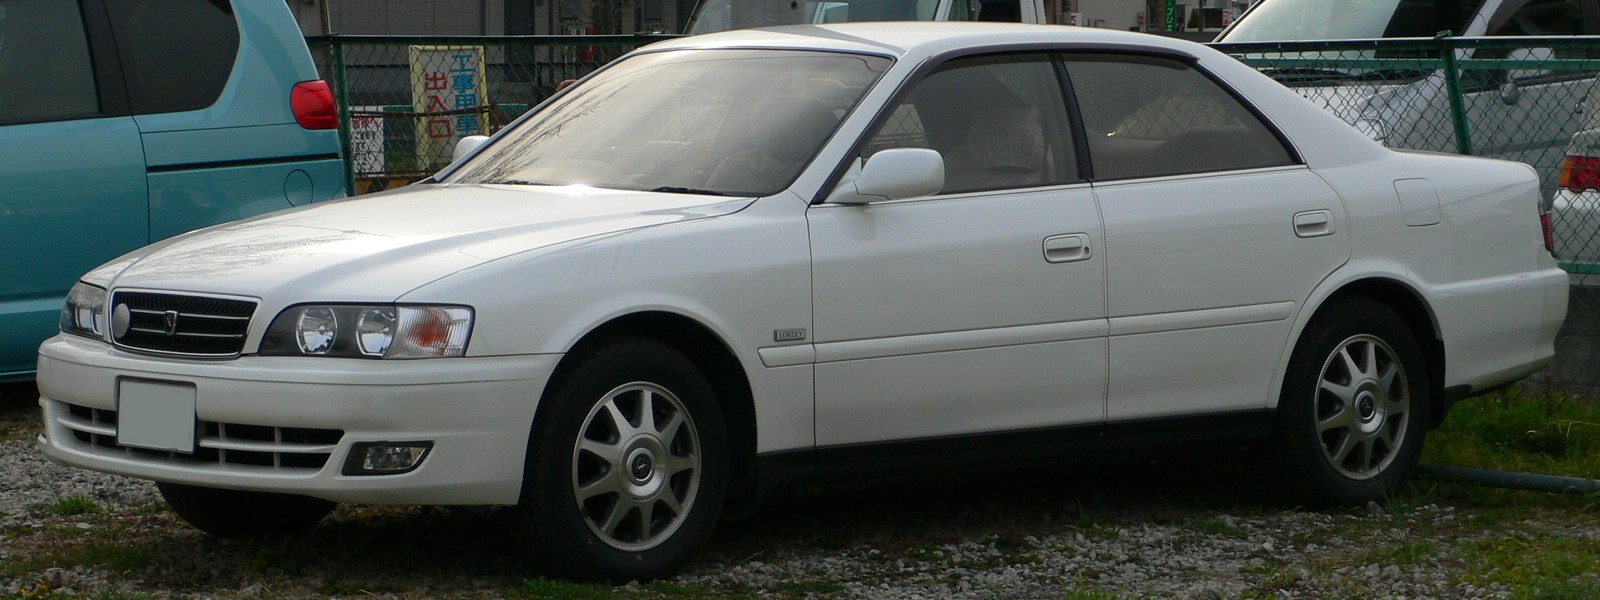 Toyota Chaser VI (X100) 1996 - 1998 Sedan #6